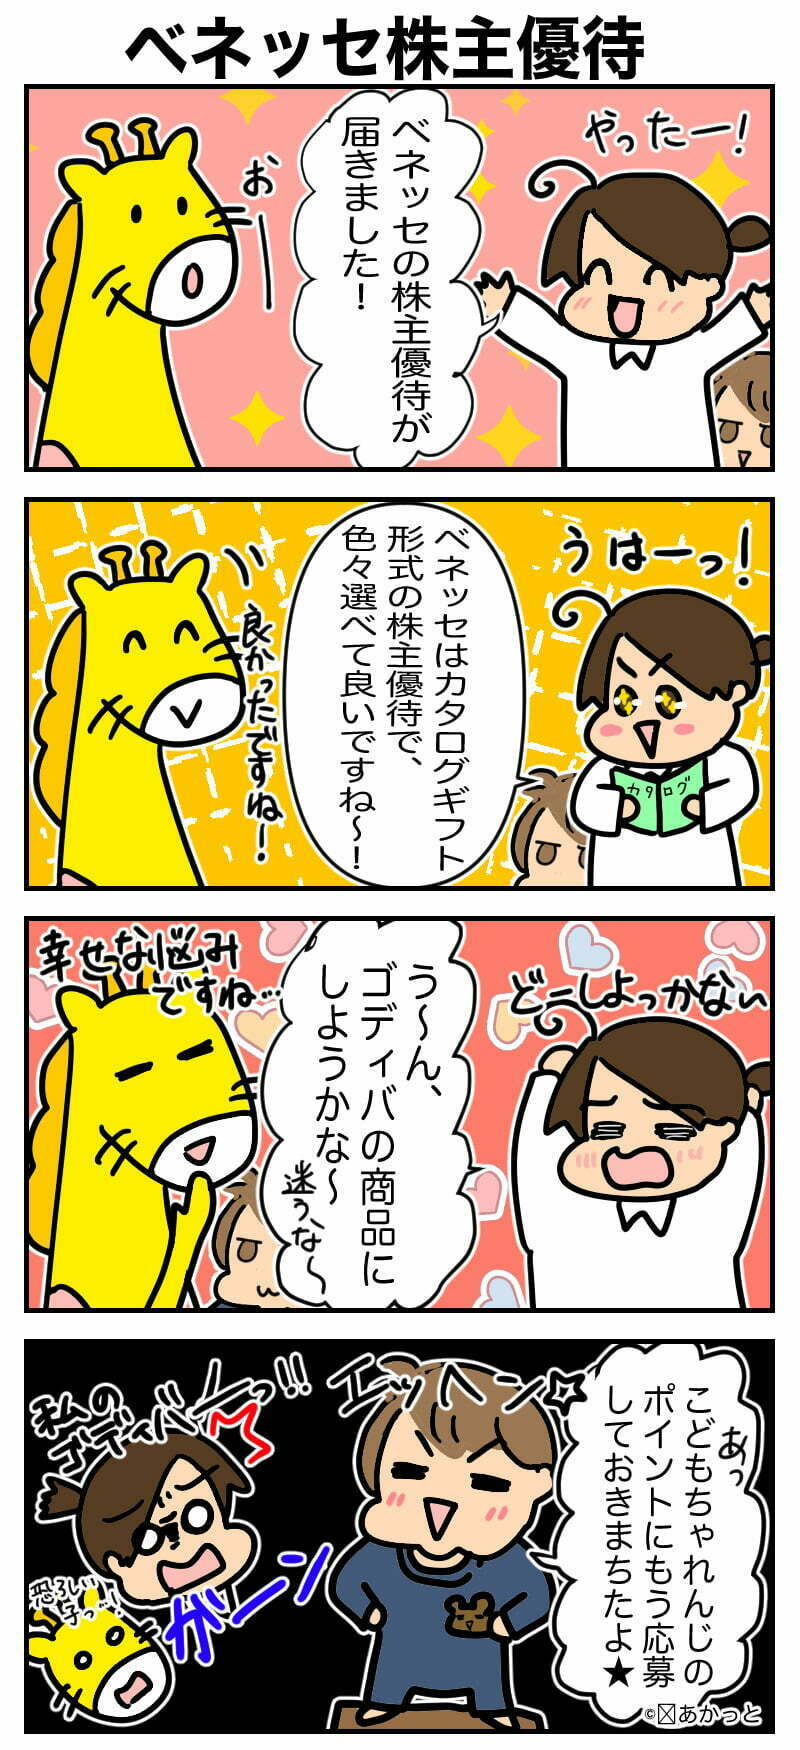 ベネッセ(9783)株主優待の解説漫画